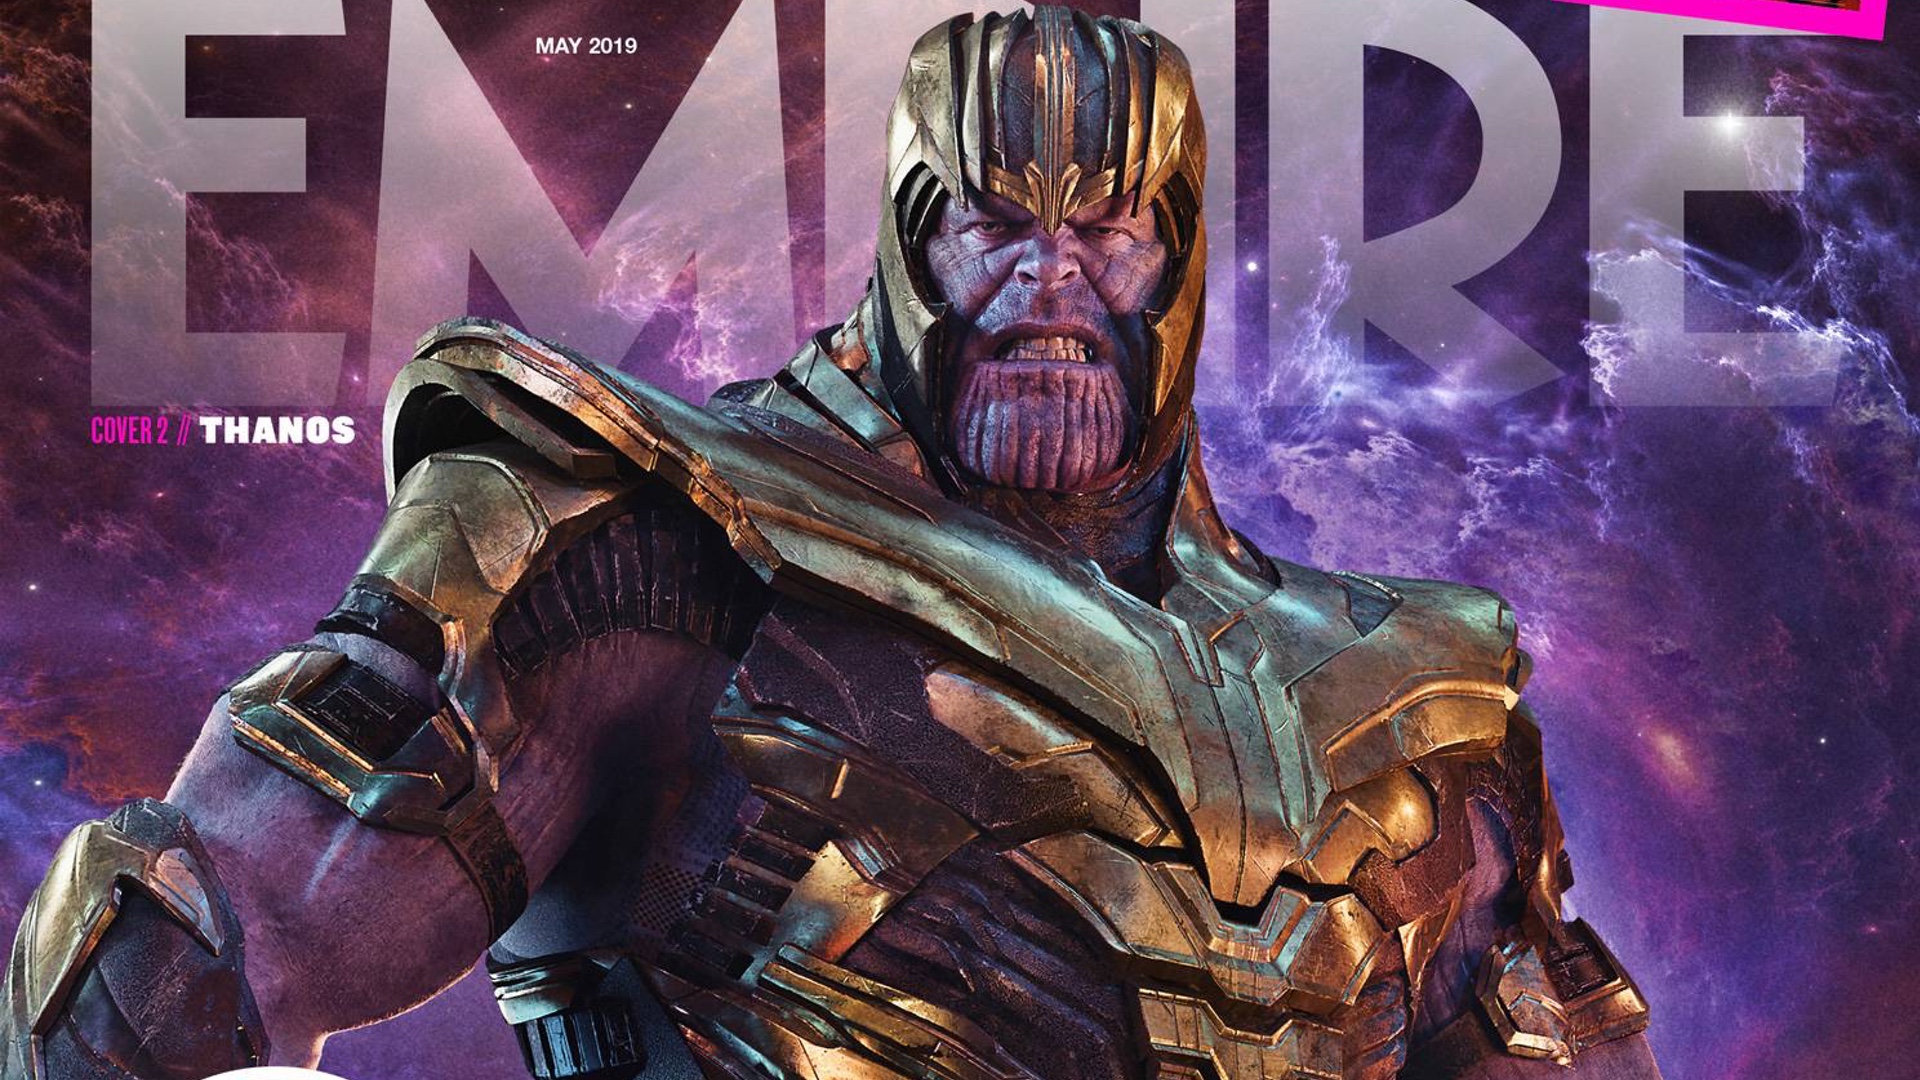 18+] Thanos Endgame Wallpapers - WallpaperSafari